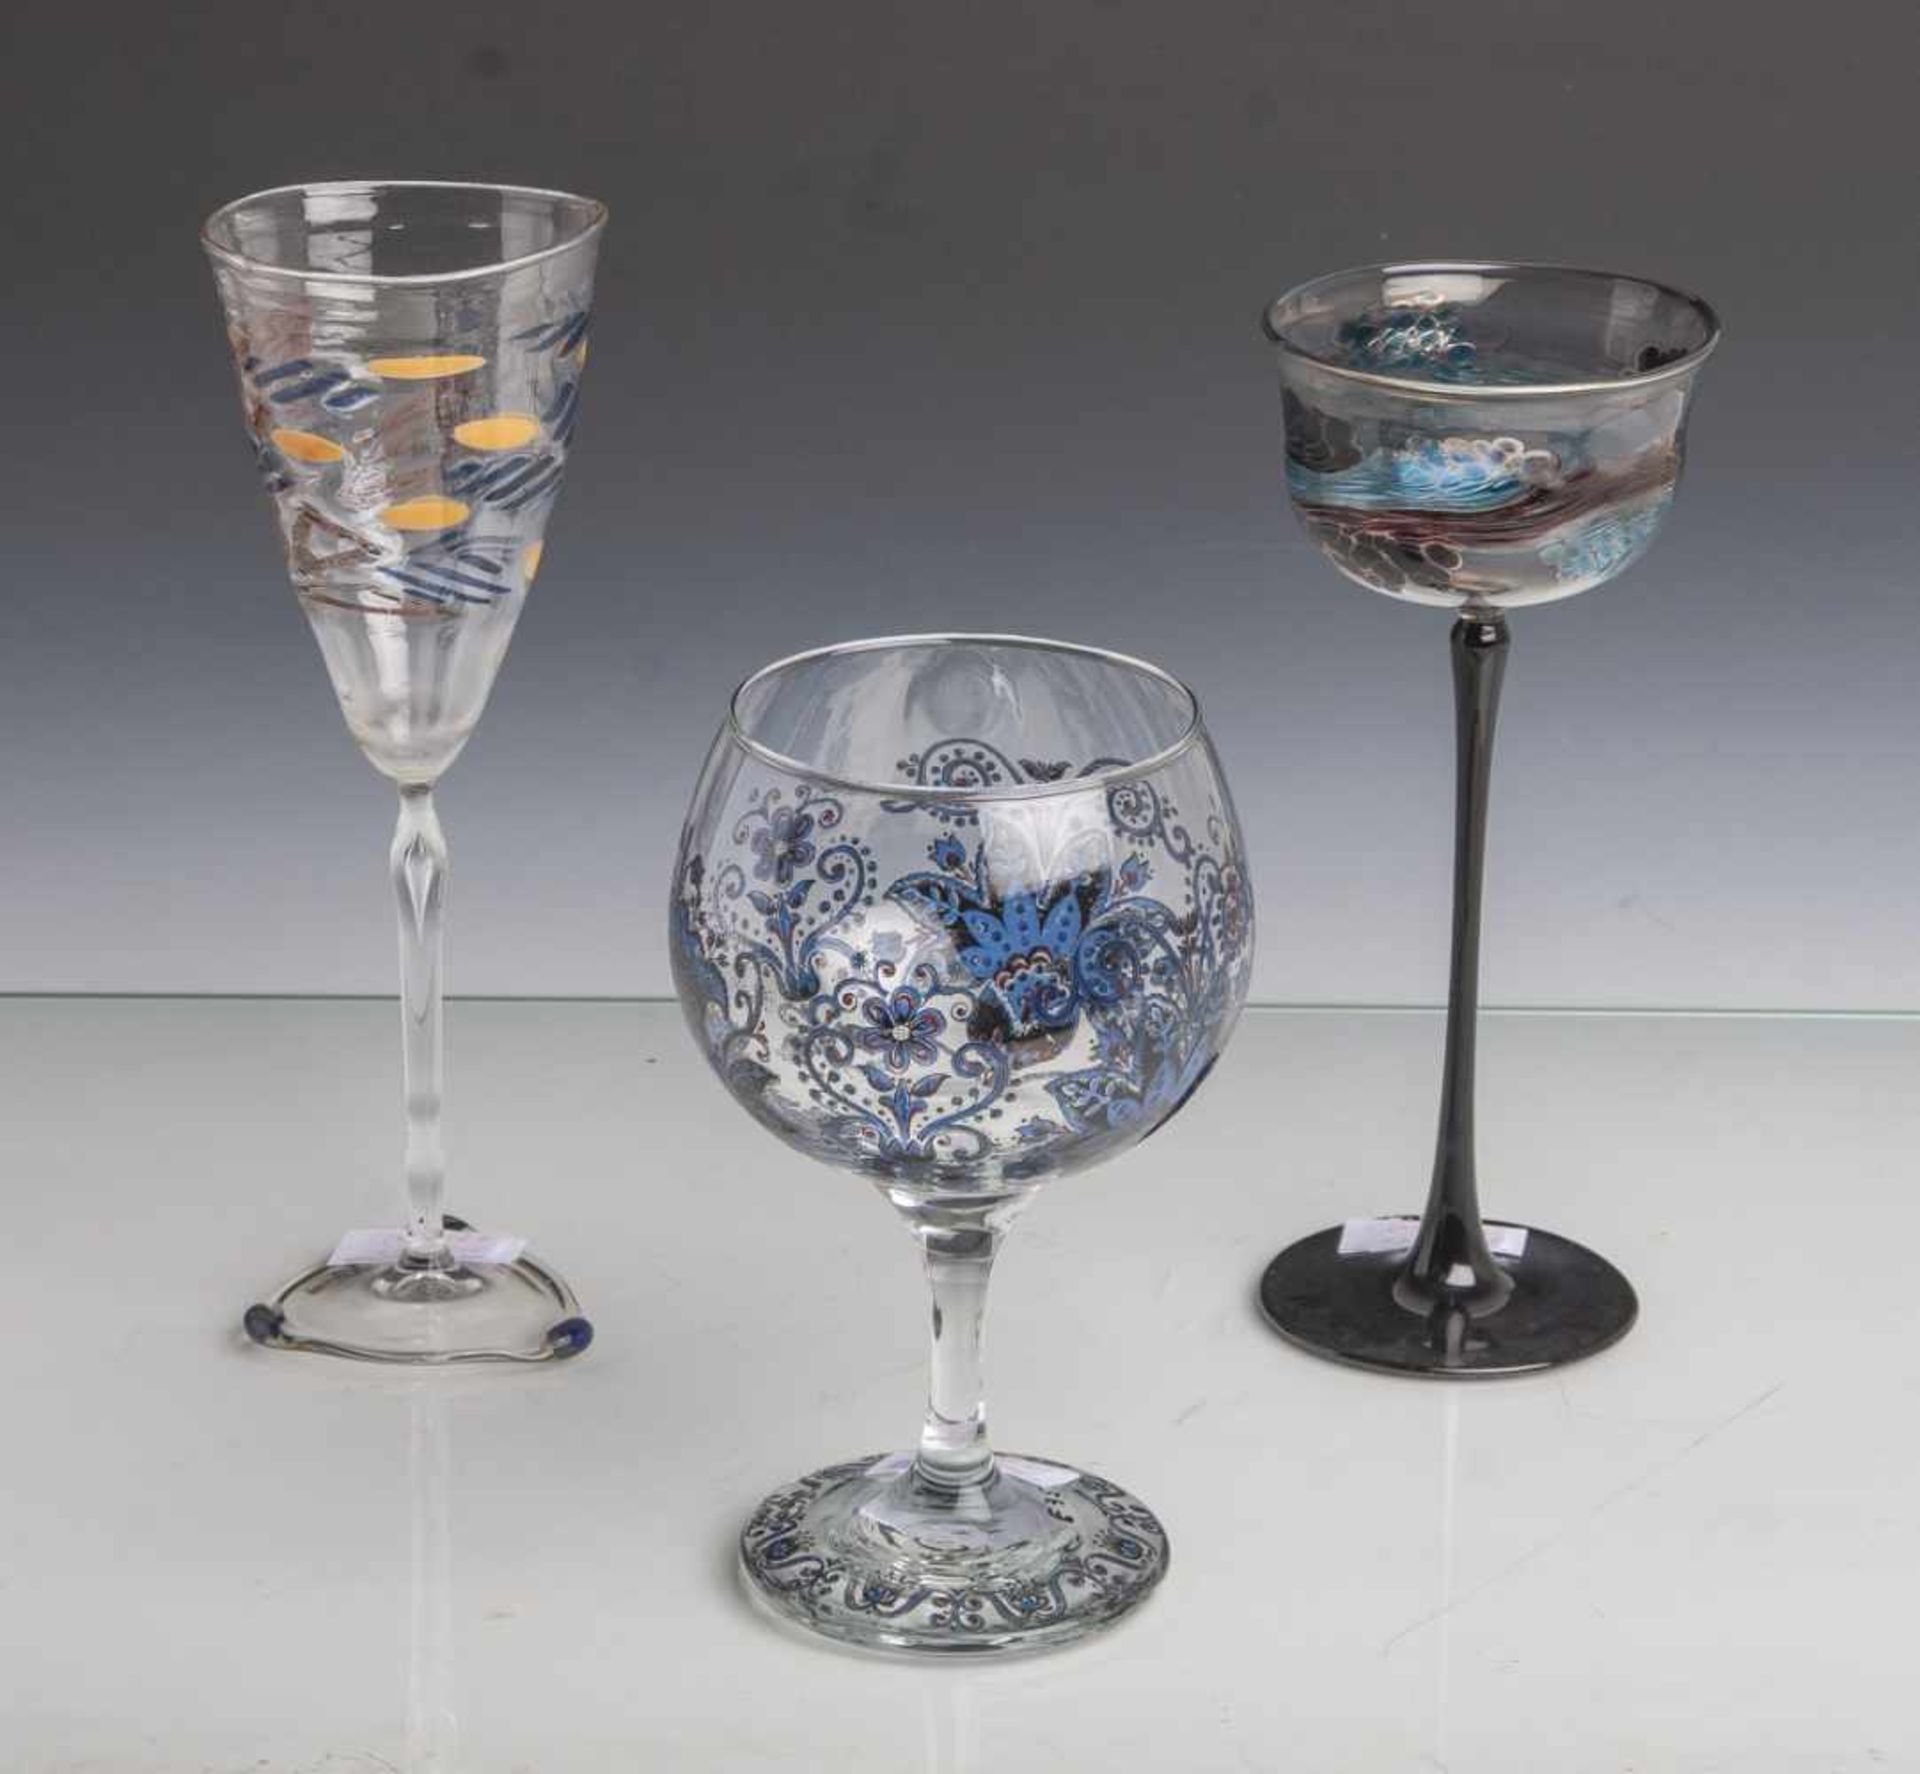 Konvolut von 3 Gläsern: Stengelglas, Entwurf Rolf Schrade (geb. 1959), farbloses Glas, Fußu.